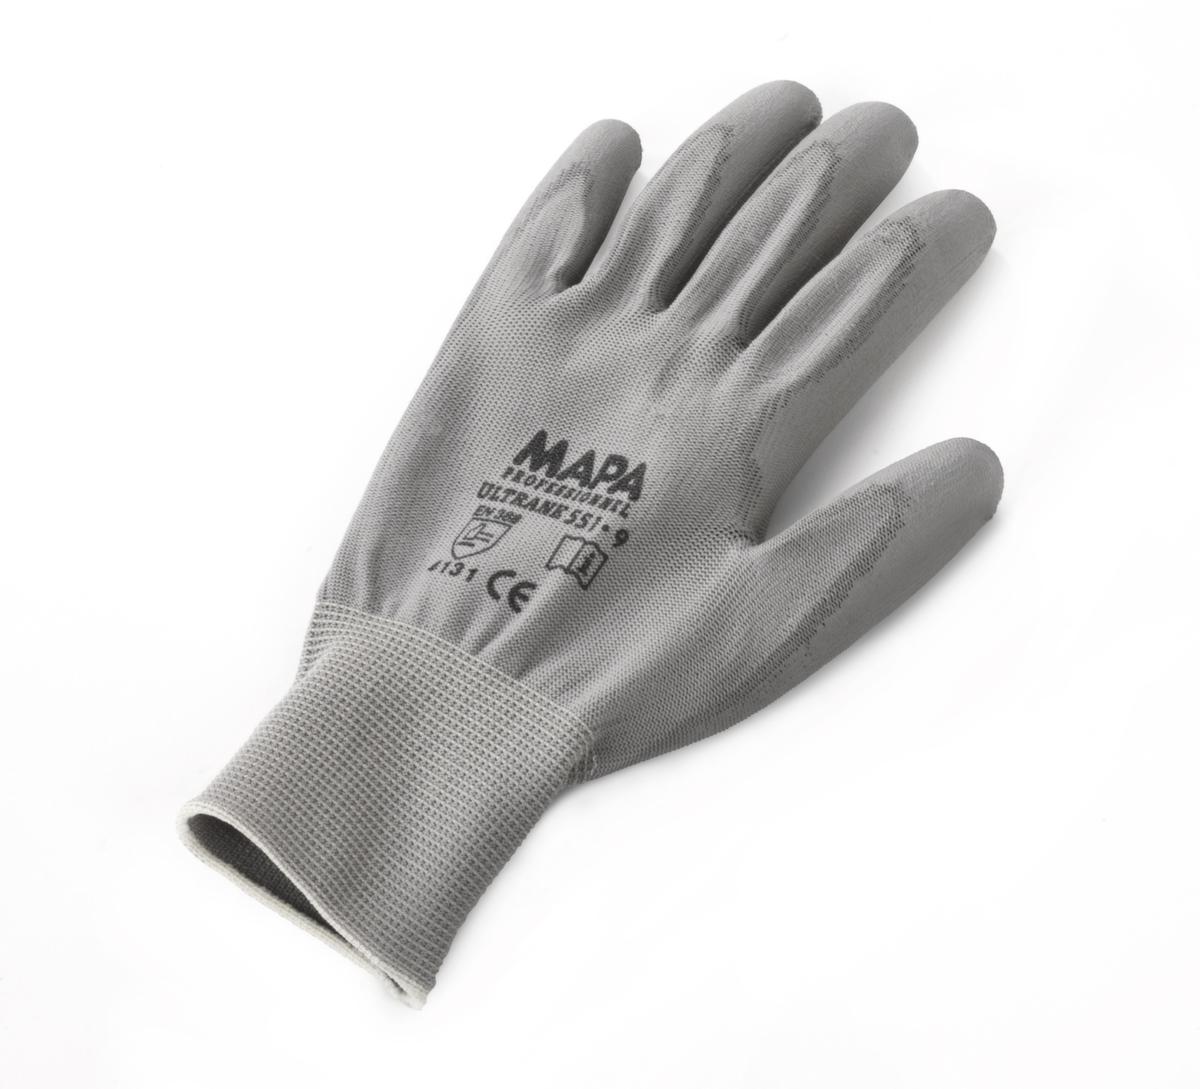 Schutzhandschuhe Ultrane für den Industriegebrauch, Polyamid, Größe 7 Standard 3 ZOOM